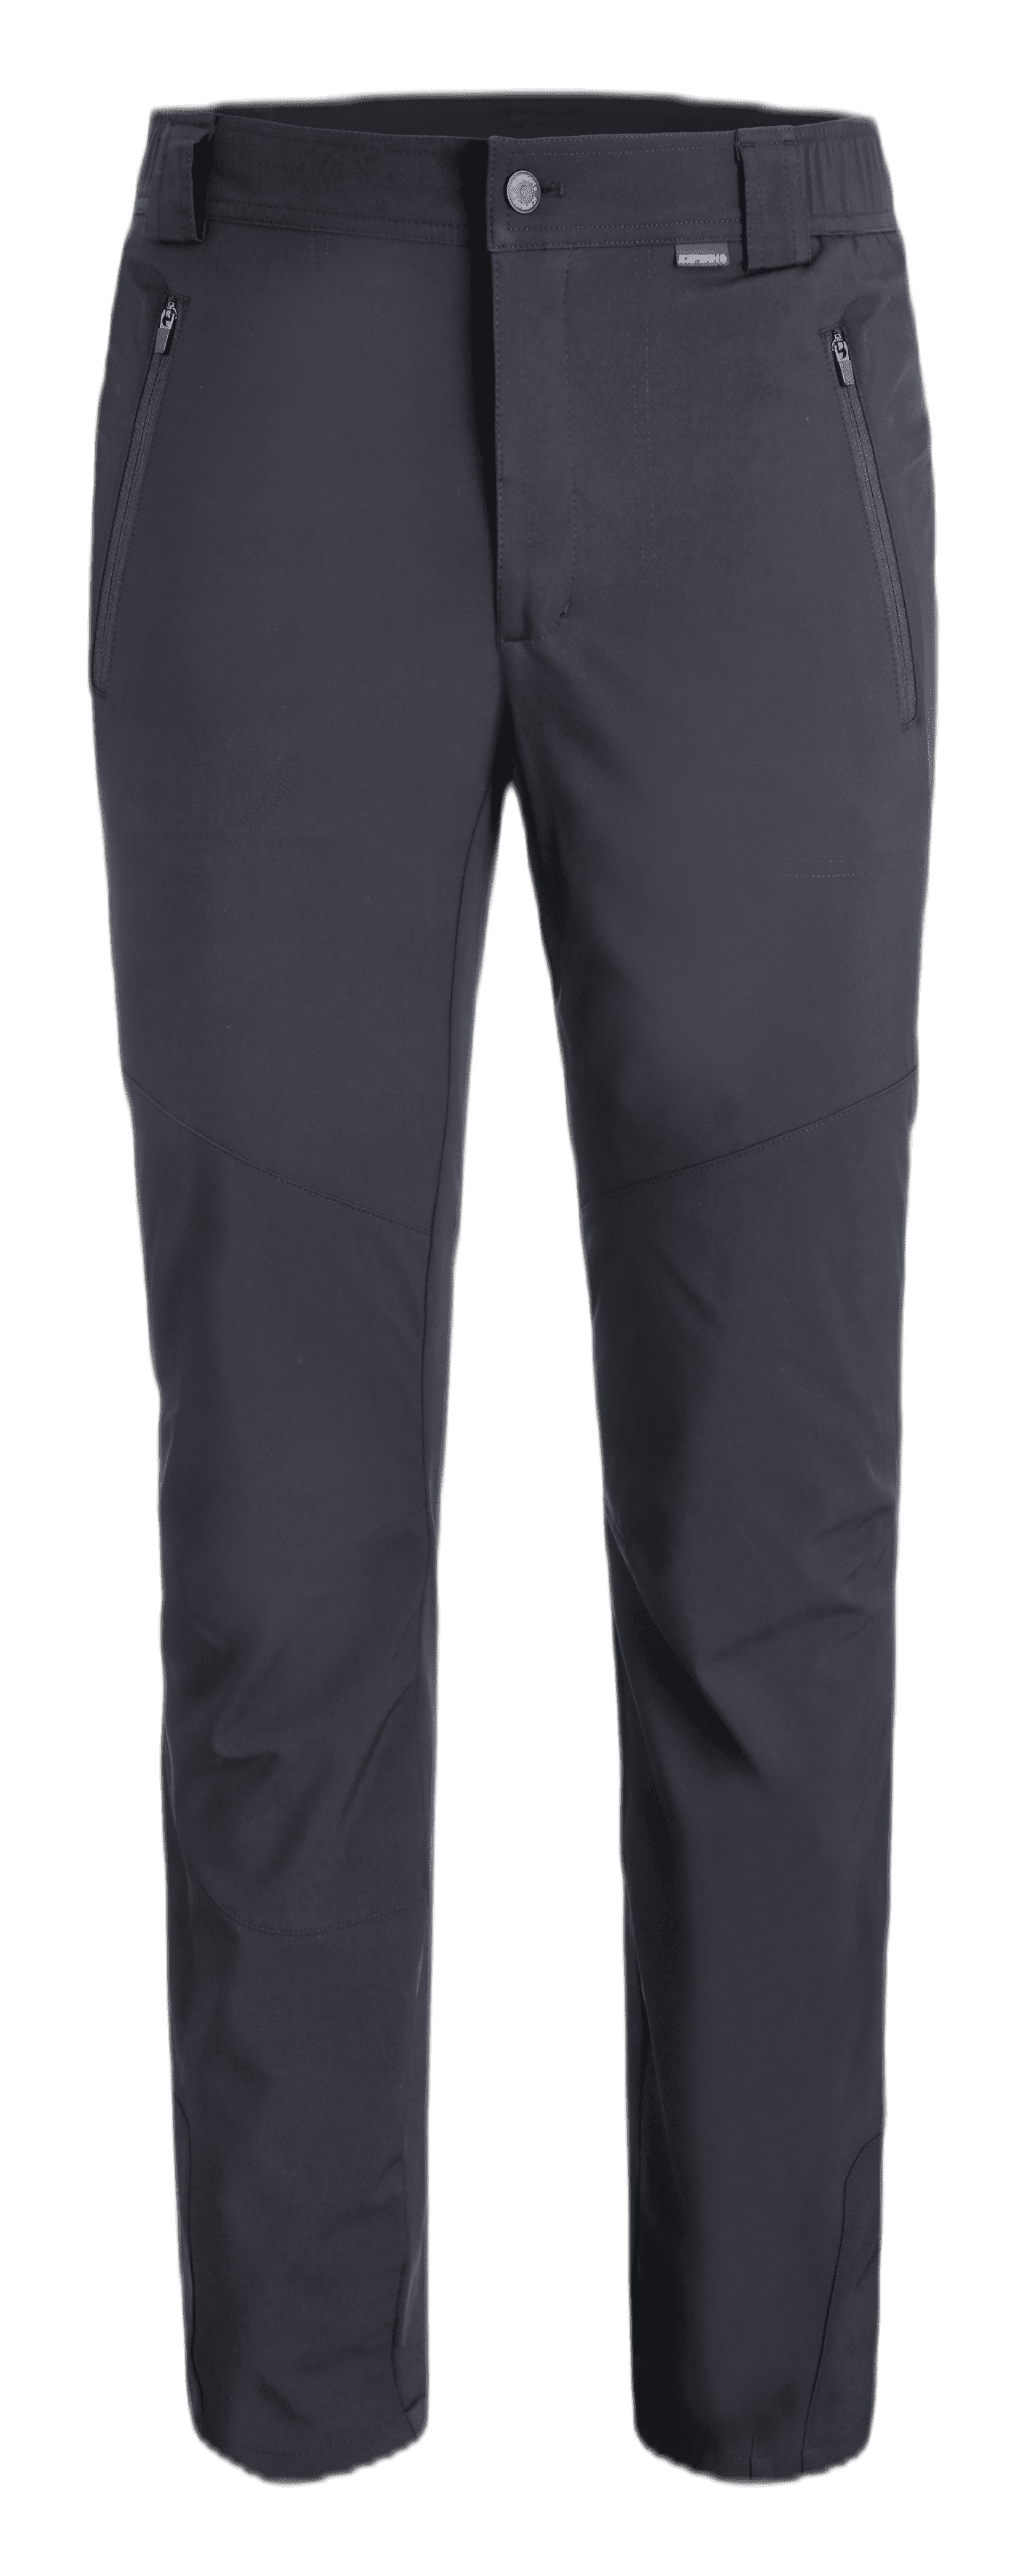 Icepeak Dorr Trousers - Black - Wintersport - Gevoerde broeken - Lange broeken